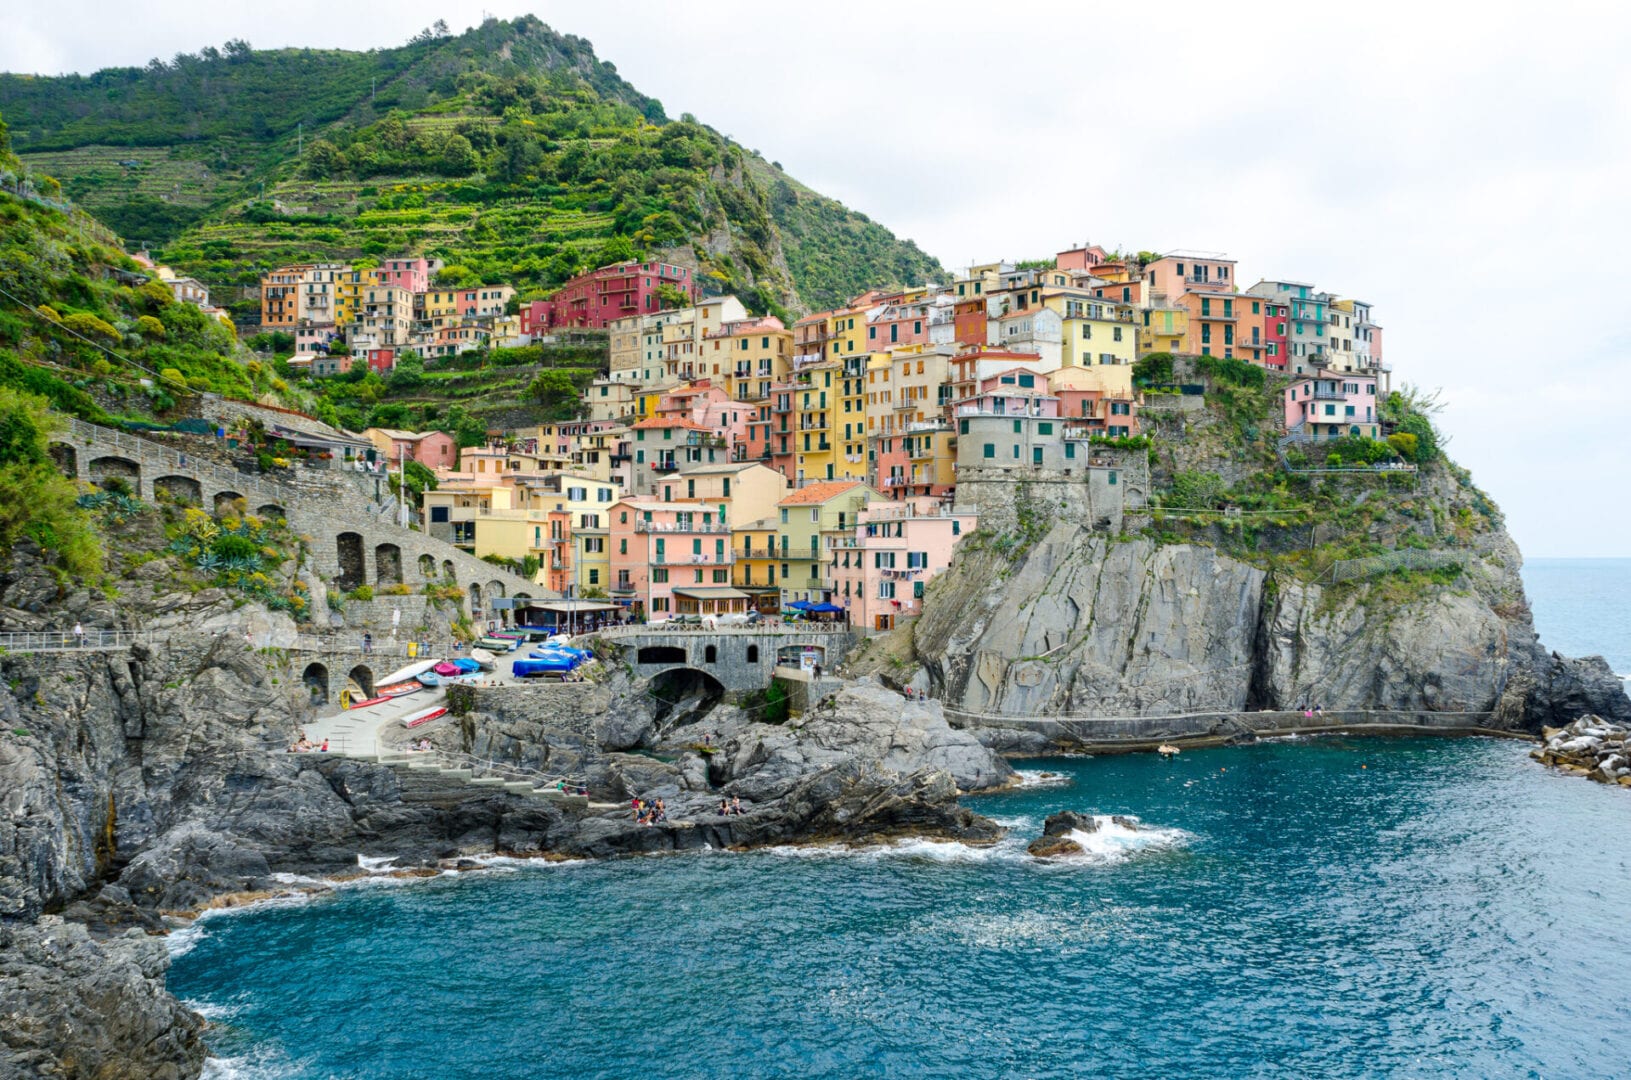 Viaje a Cinque Terre, Italia incluido coche de alquiler